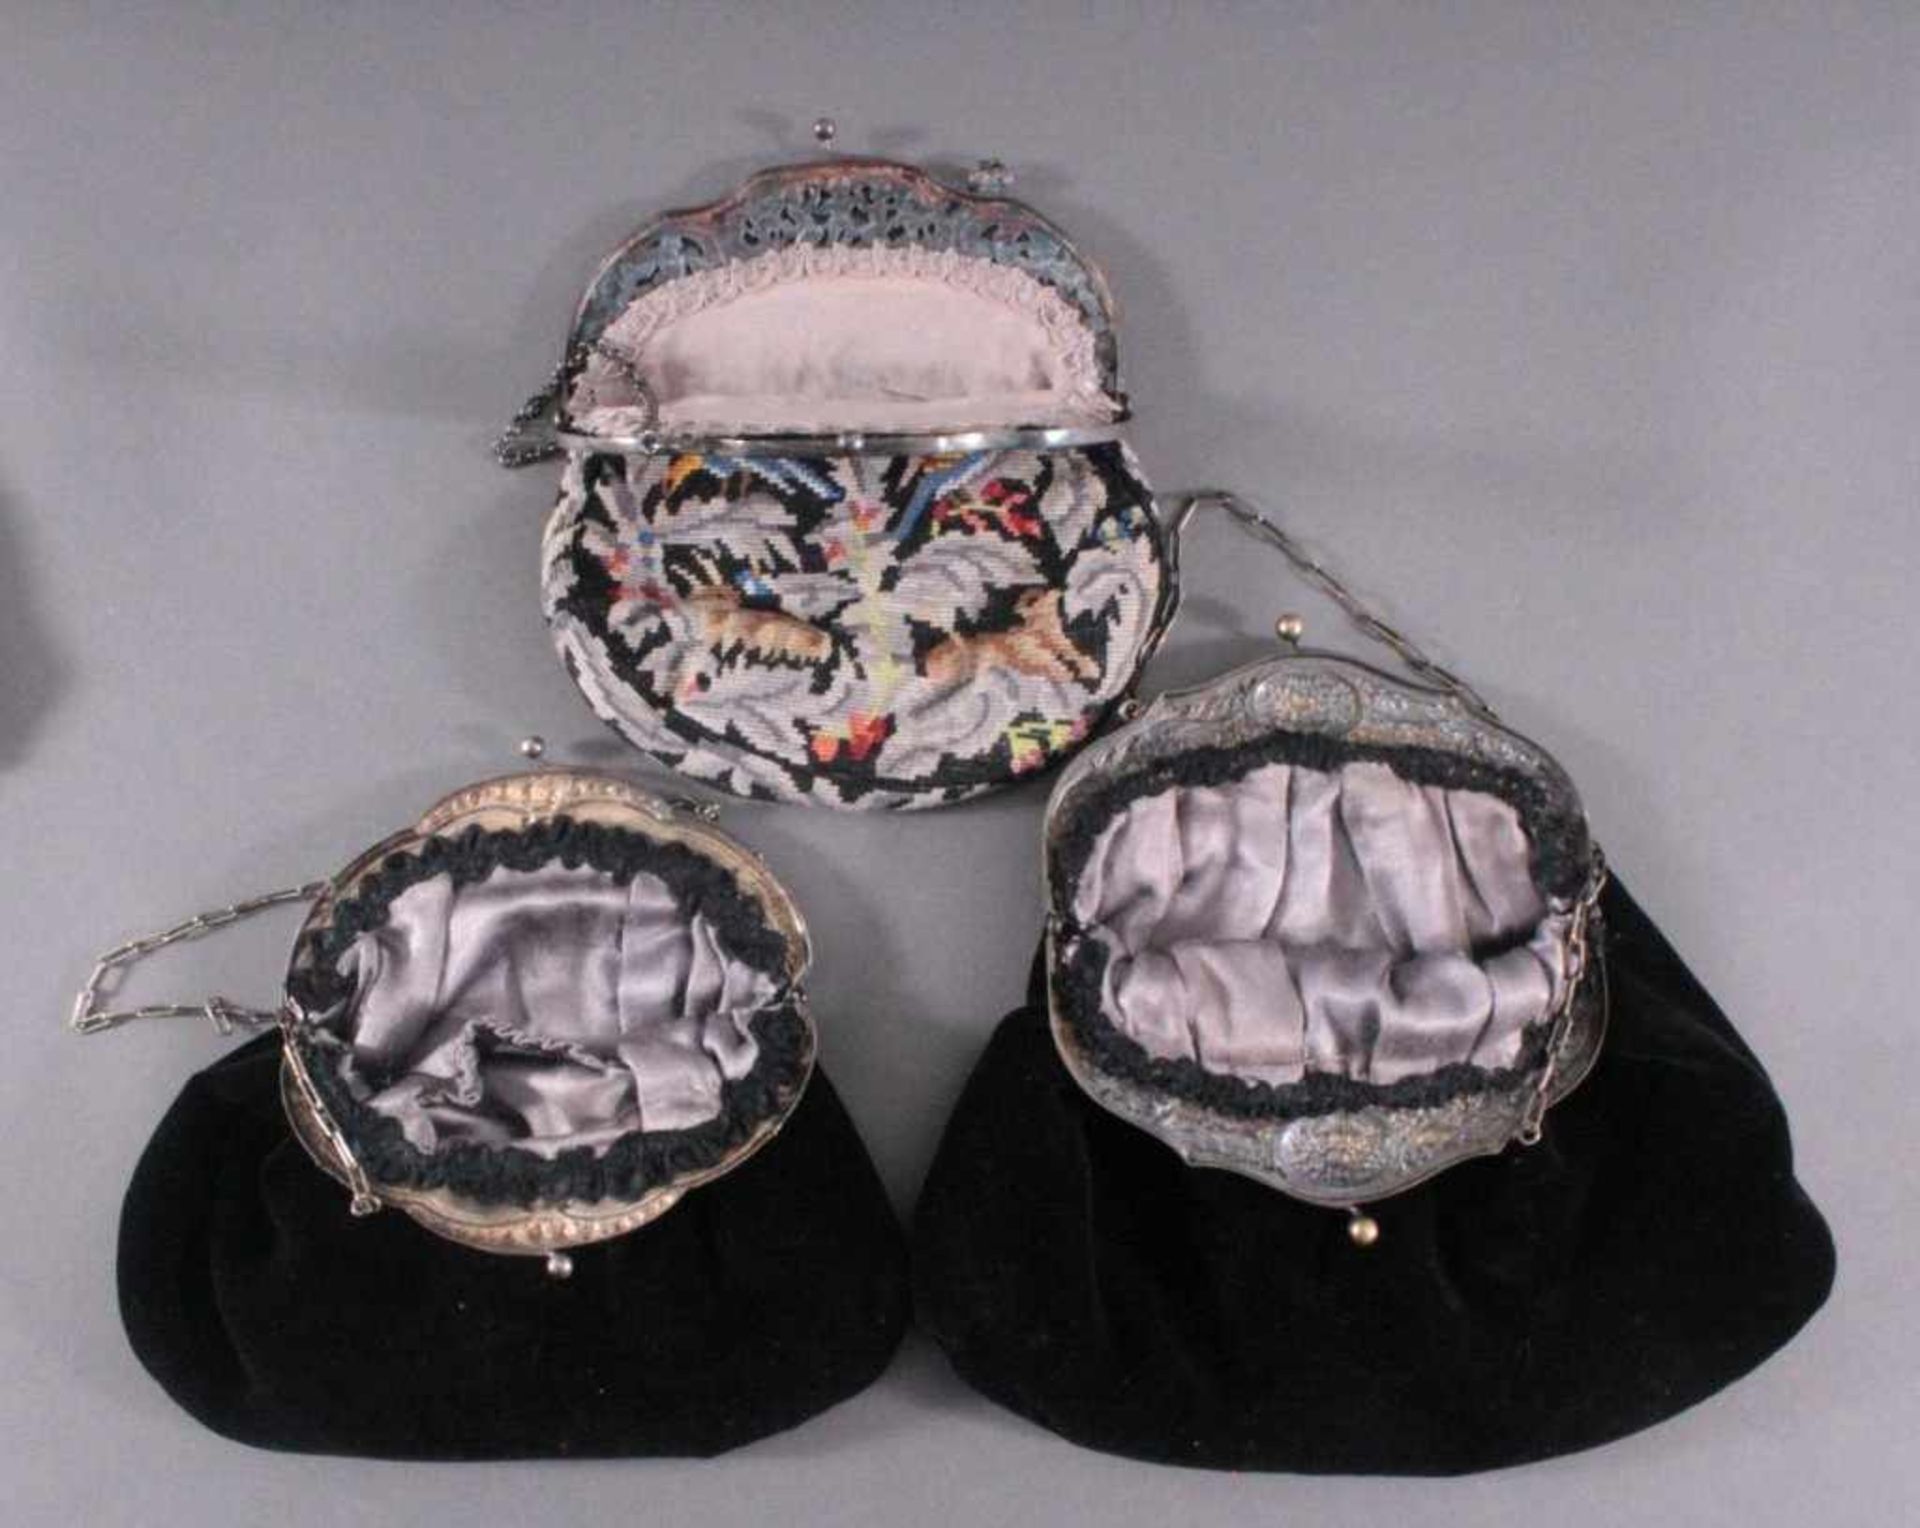 3 Antike Handtaschen und 1 SilberbügelGobelintasche und Bügel sind aus Silber, - Image 3 of 3